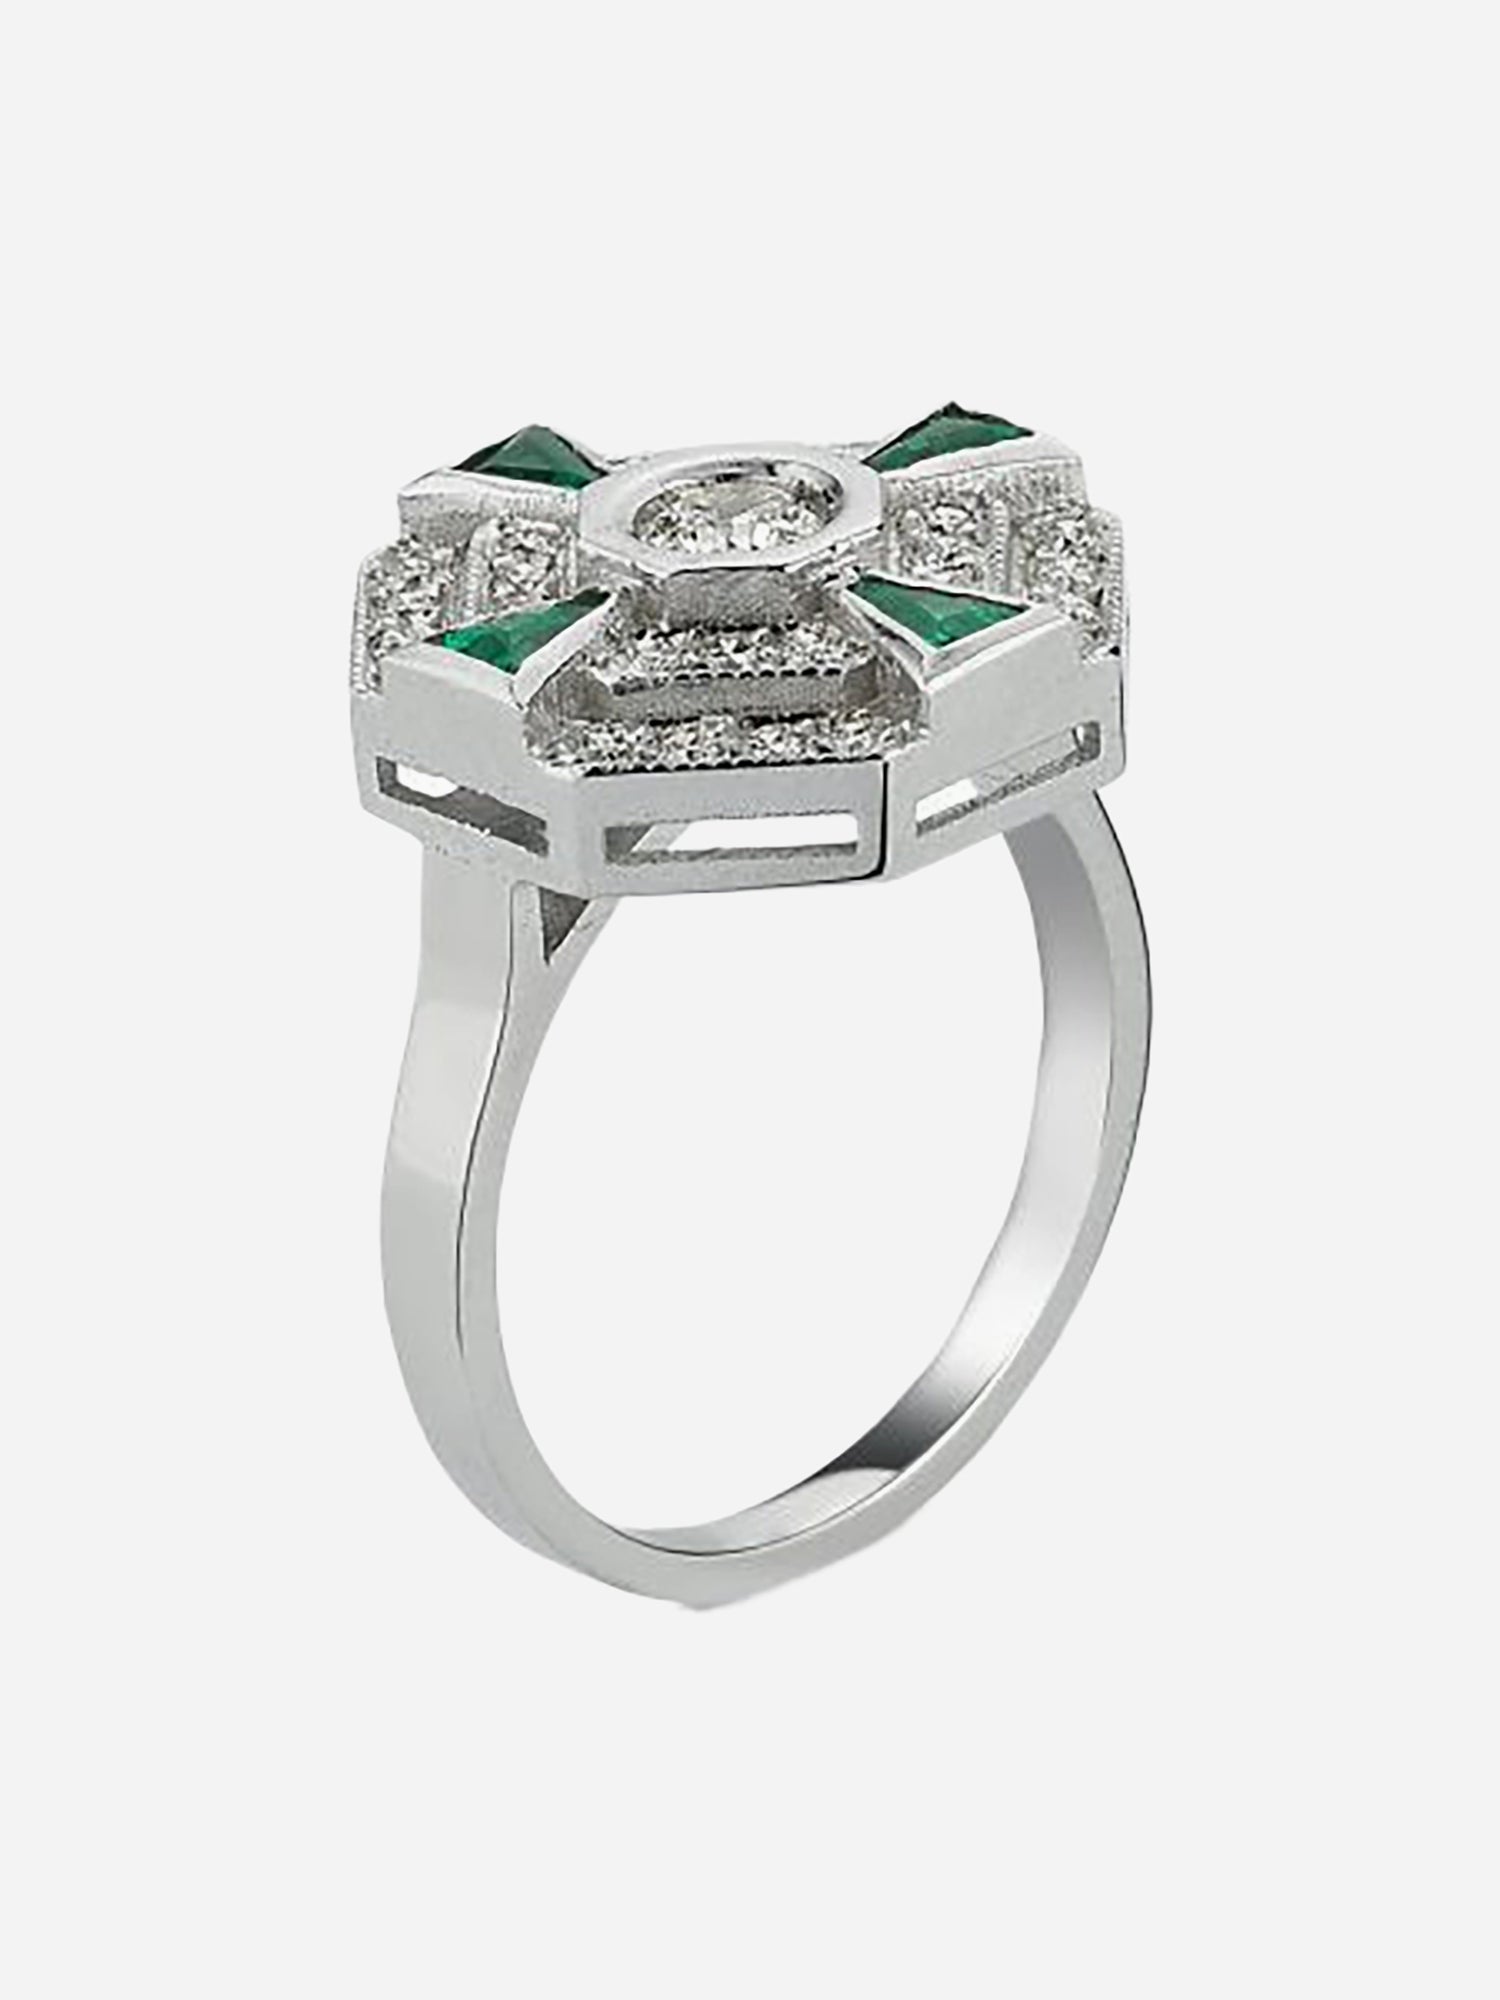 MELIS GORAL Paris Tsavorite and Diamond Ring